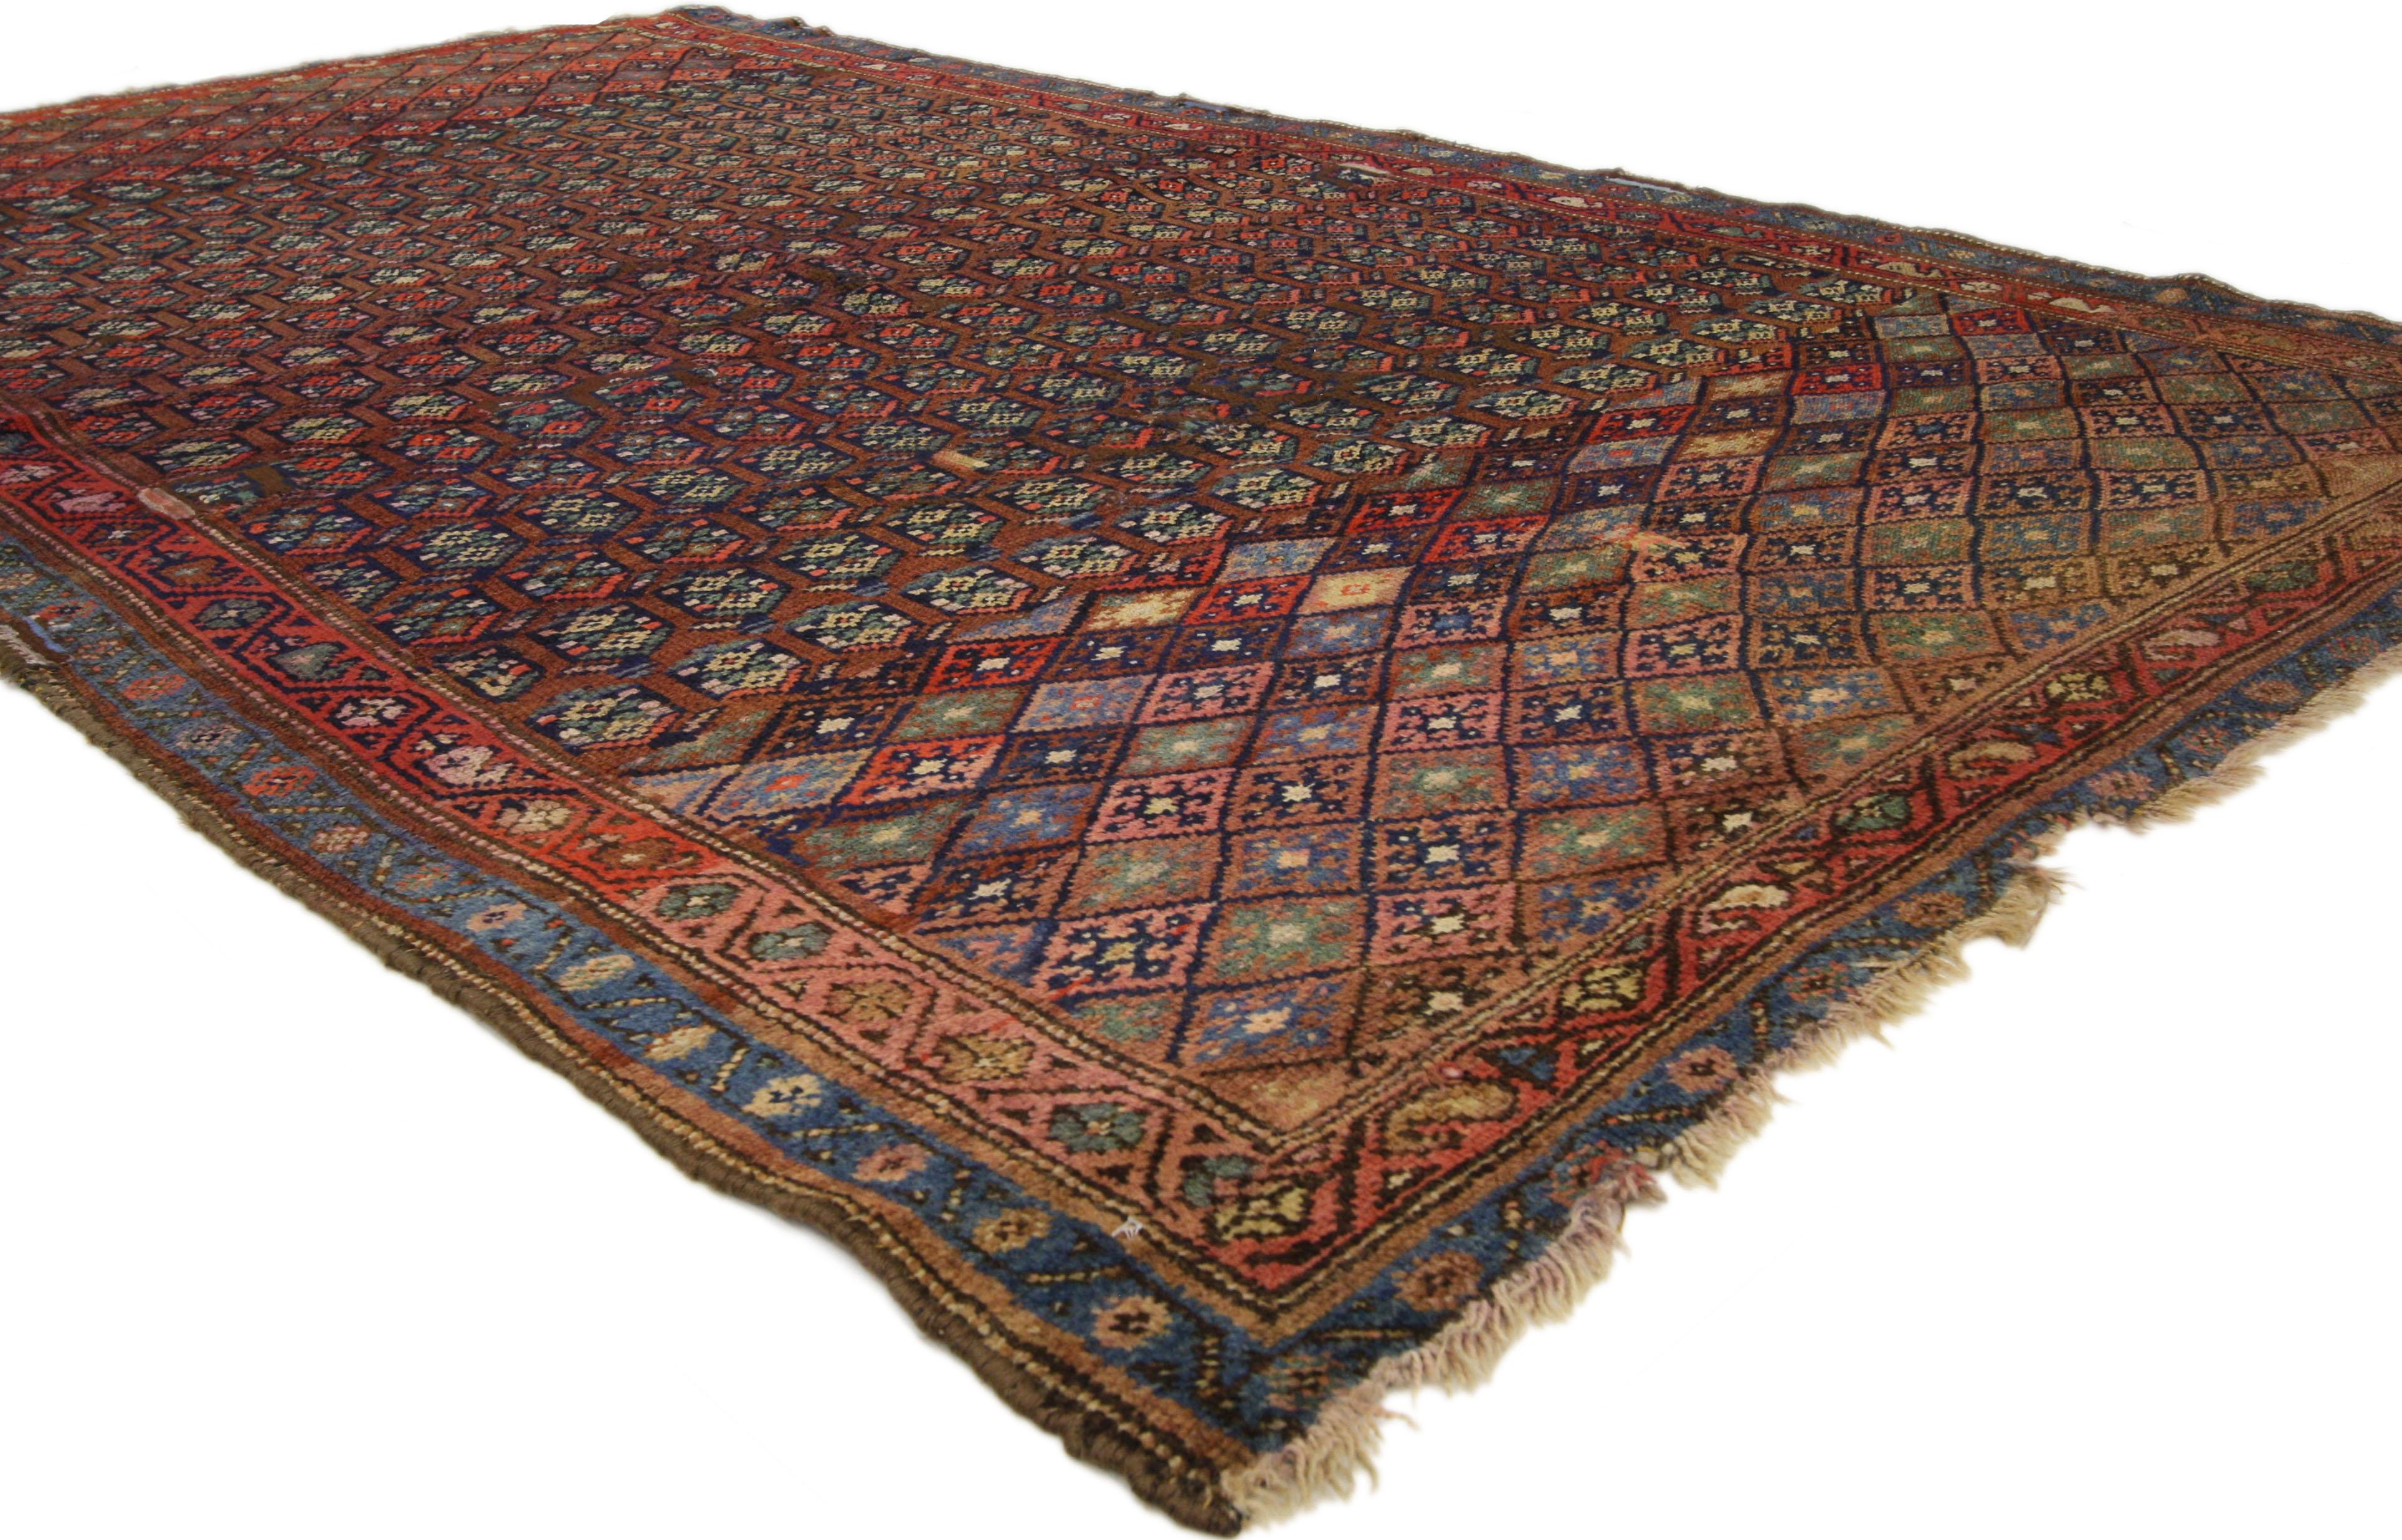 72611 Tapis Persan Kurd ancien et vieilli avec le style Adirondack Lodge. Ce tapis Kurd persan ancien en laine nouée à la main présente un motif géométrique sur toute sa surface, composé de losanges et de motifs boteh. Il est entouré d'une bordure à